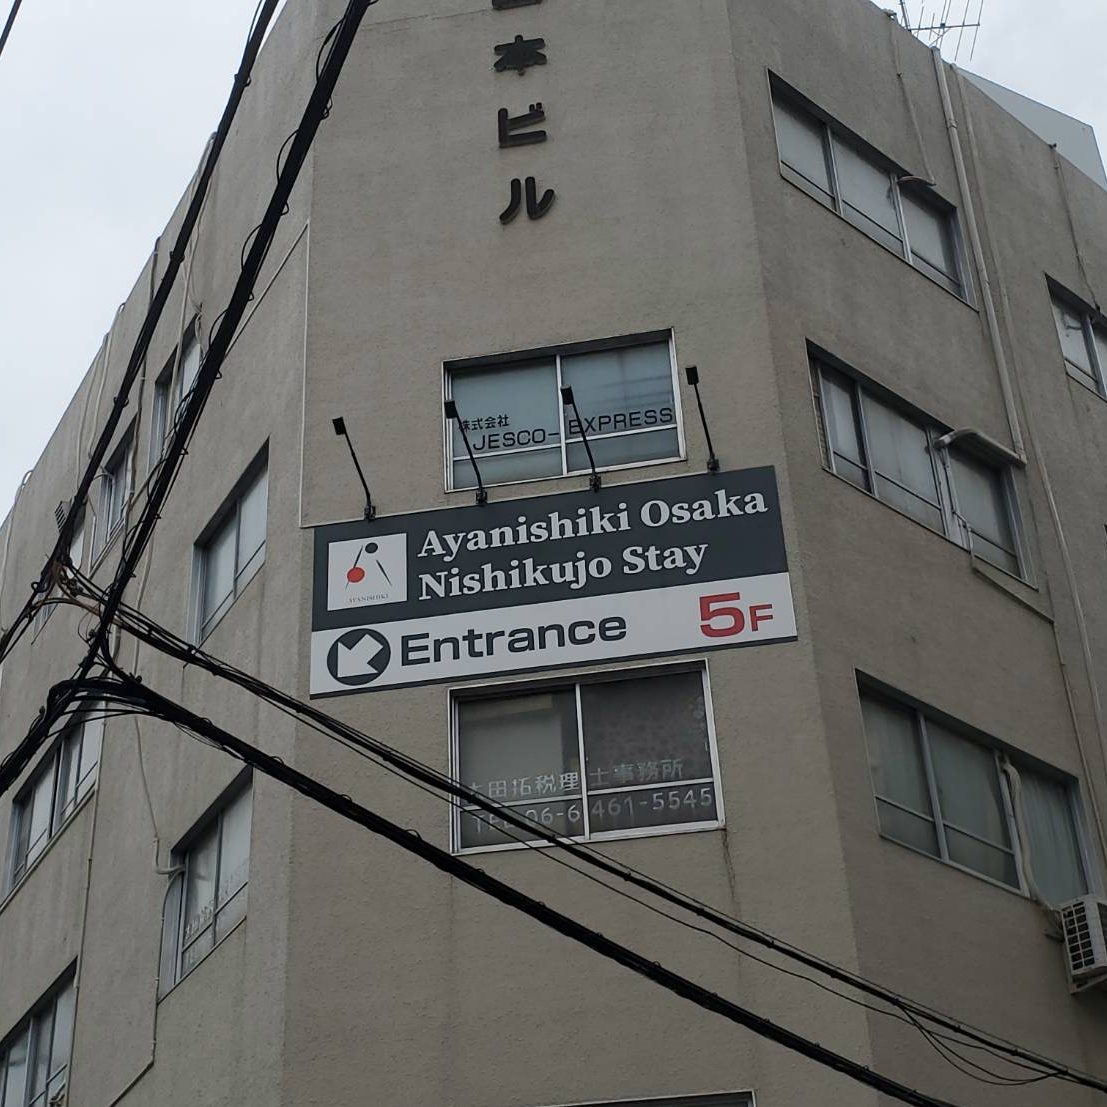 Ayanishiki Osaka Nishikujo Stay様の施工事例